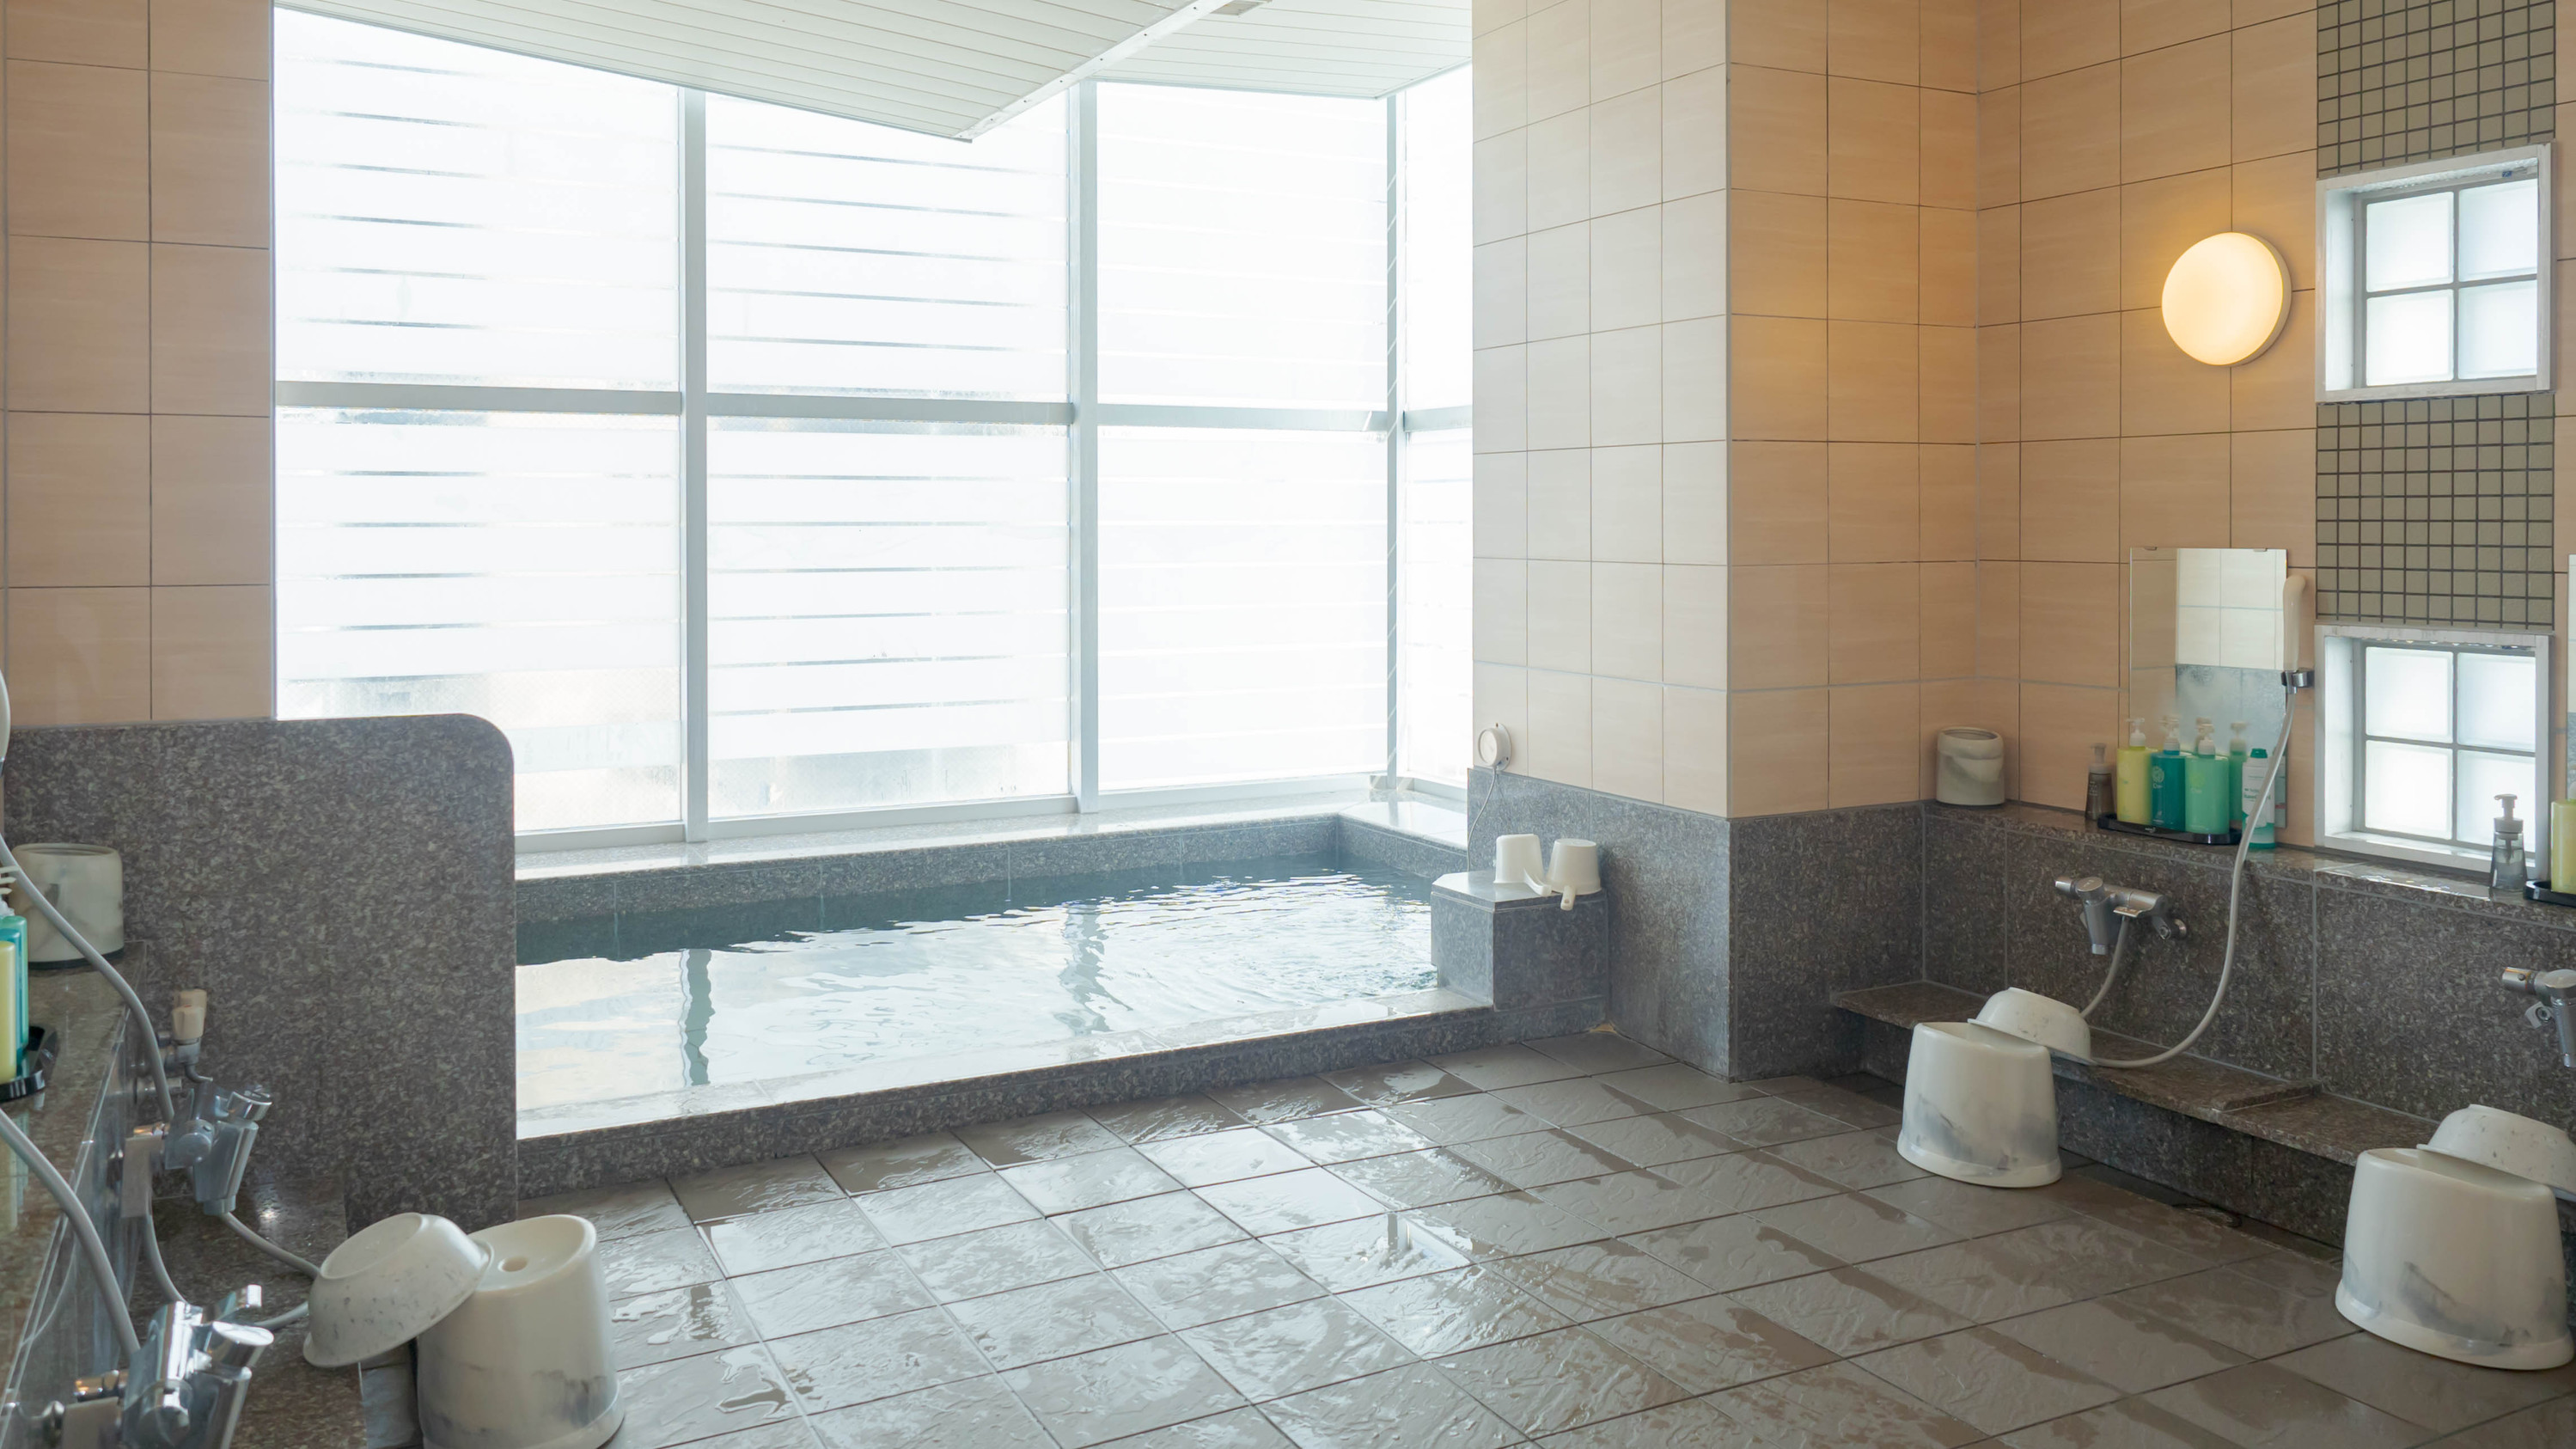 男性大浴場１４階展望大浴場「旅人の湯」盛岡市街地を眺めながらごゆっくりお寛ぎくださいませ